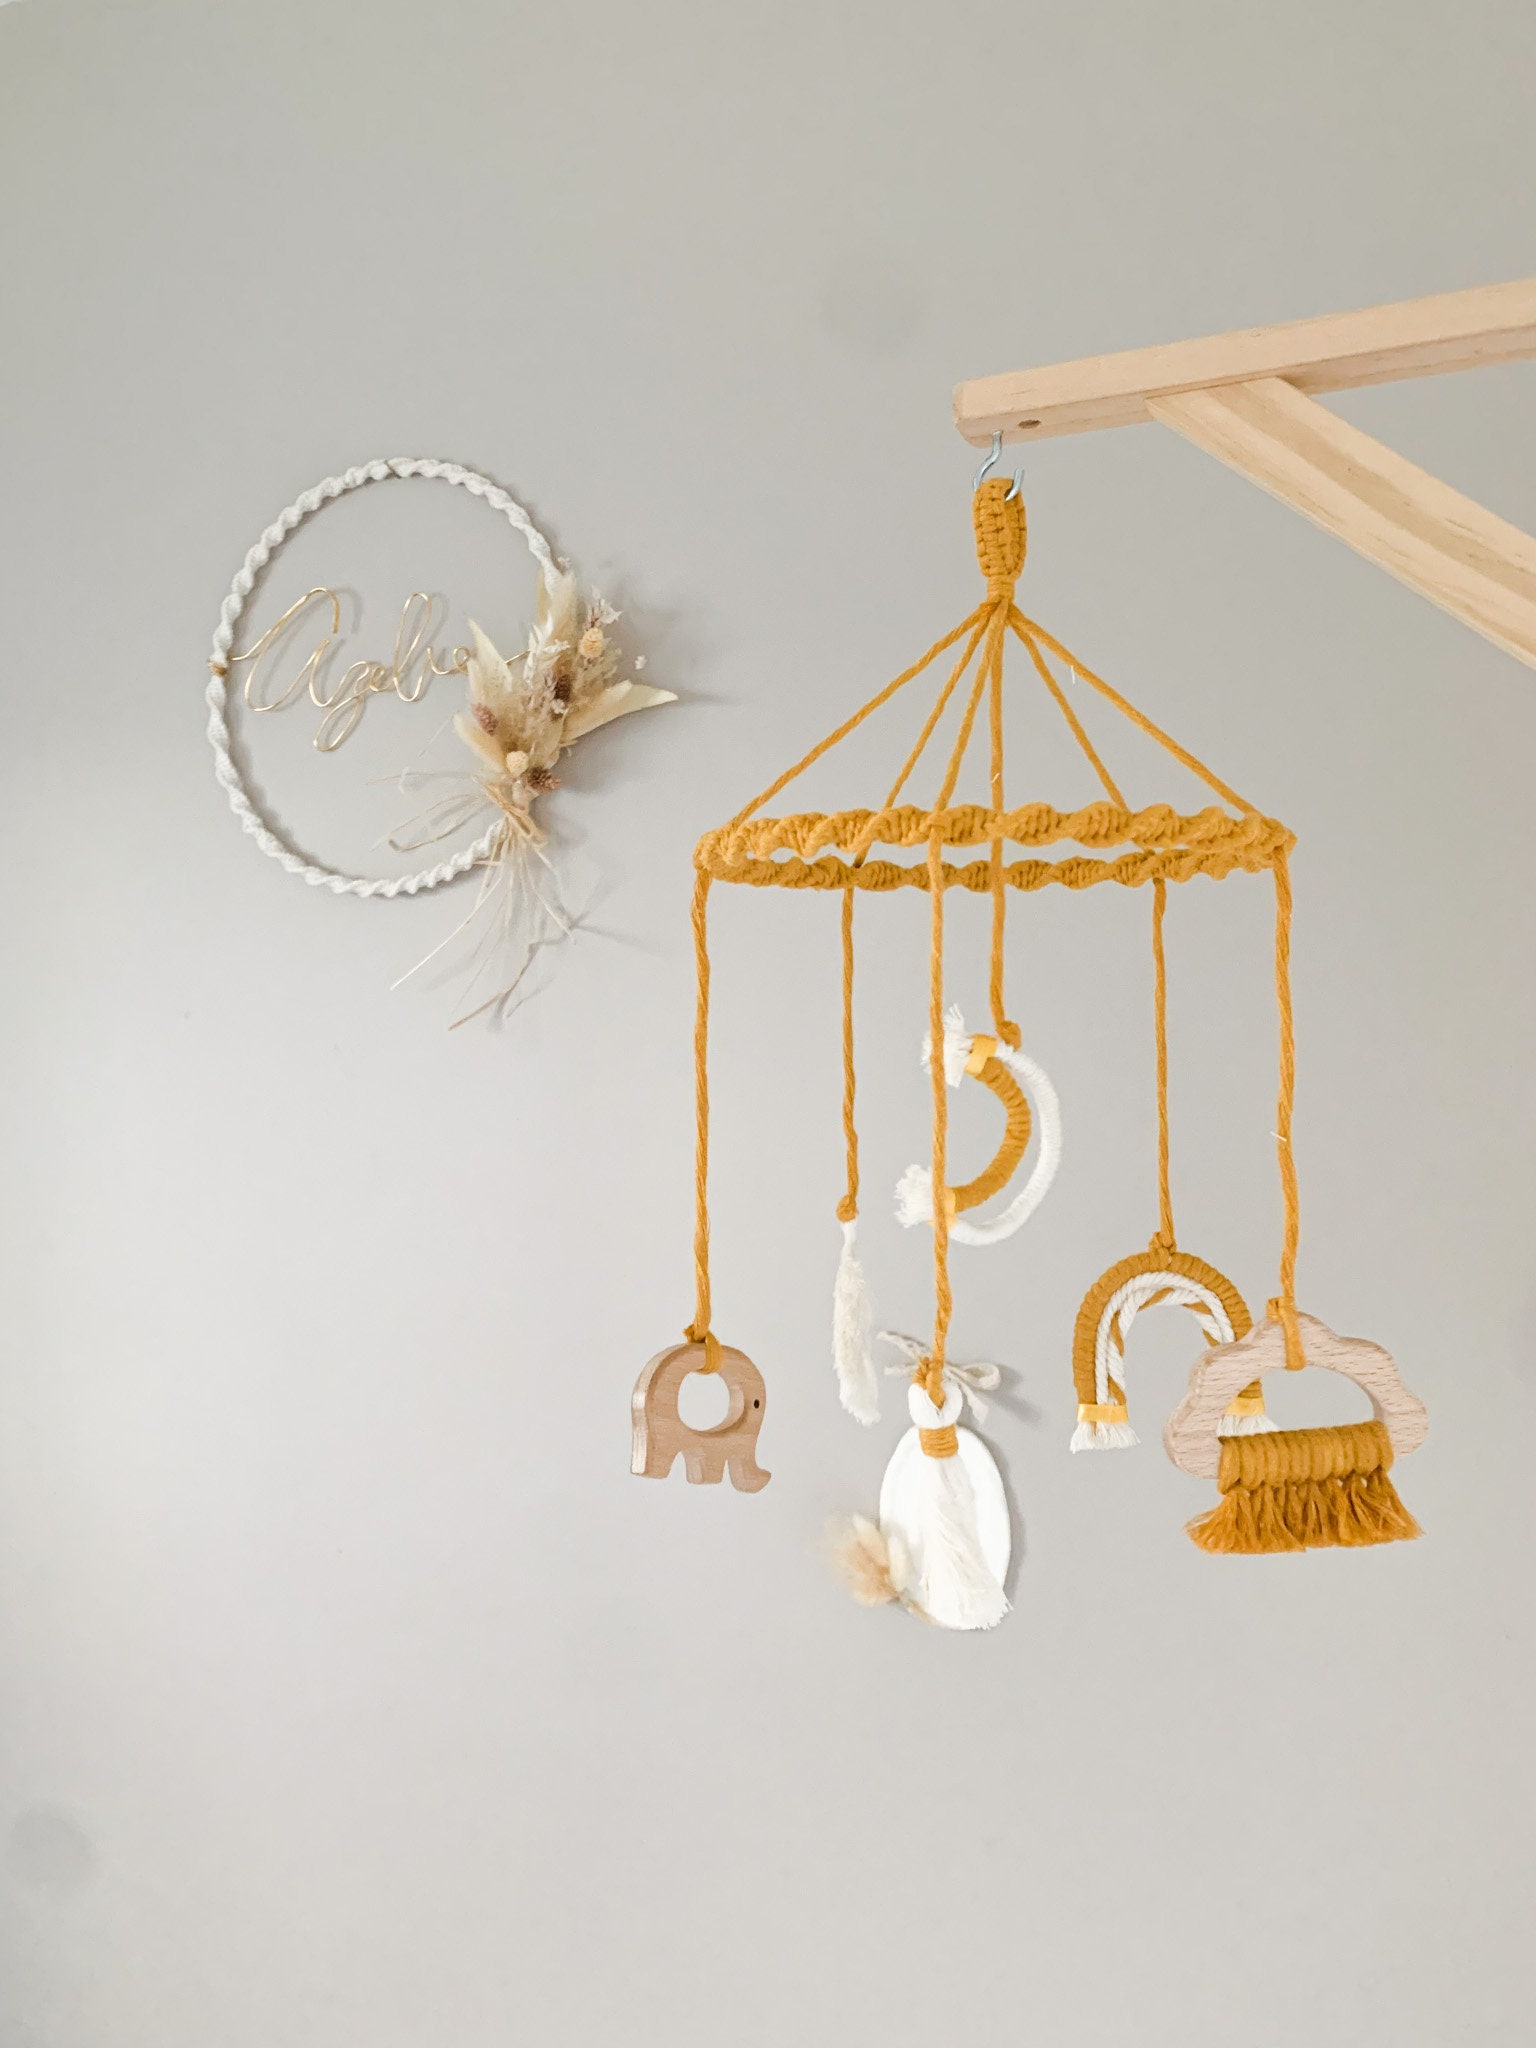 Mobile bébé en bois automne - faons - Decocot: decoration et